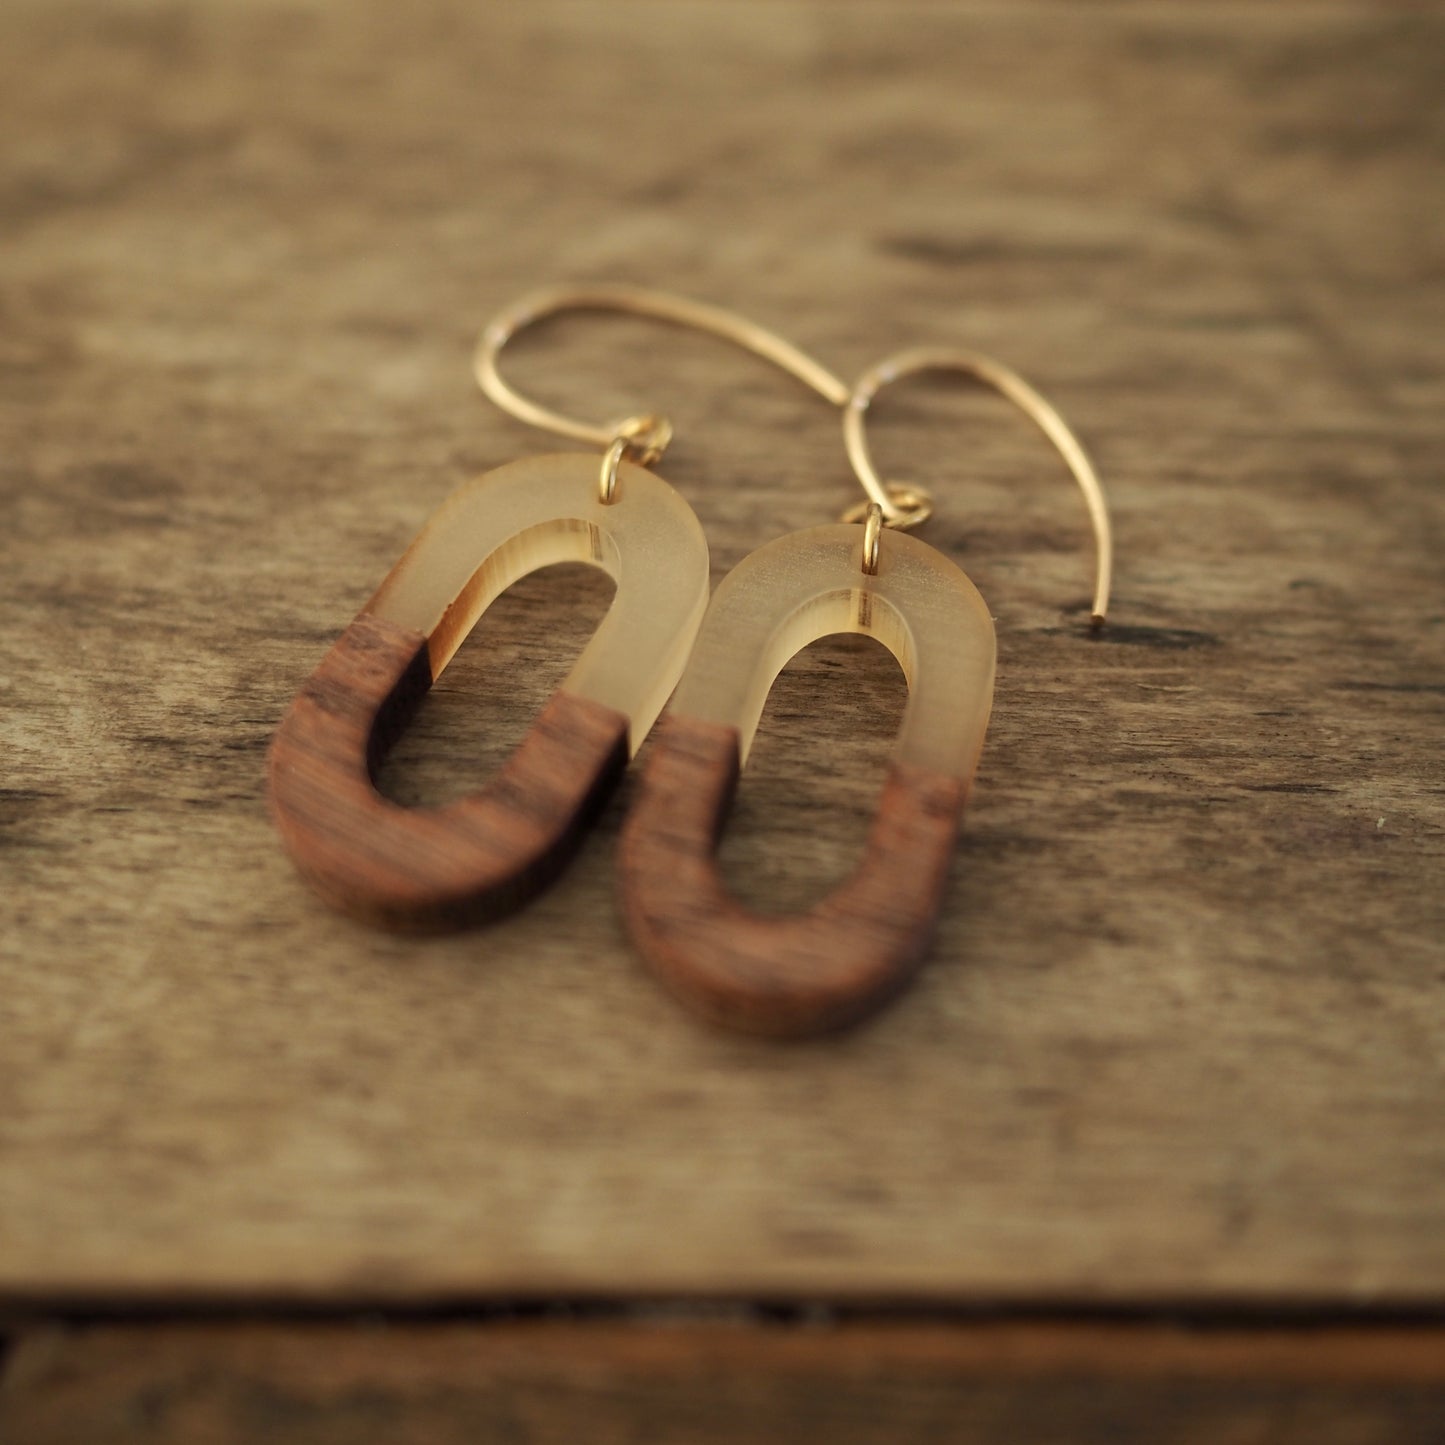 Wood earrings for fall by Nancy Wallis Designs ships worldwide